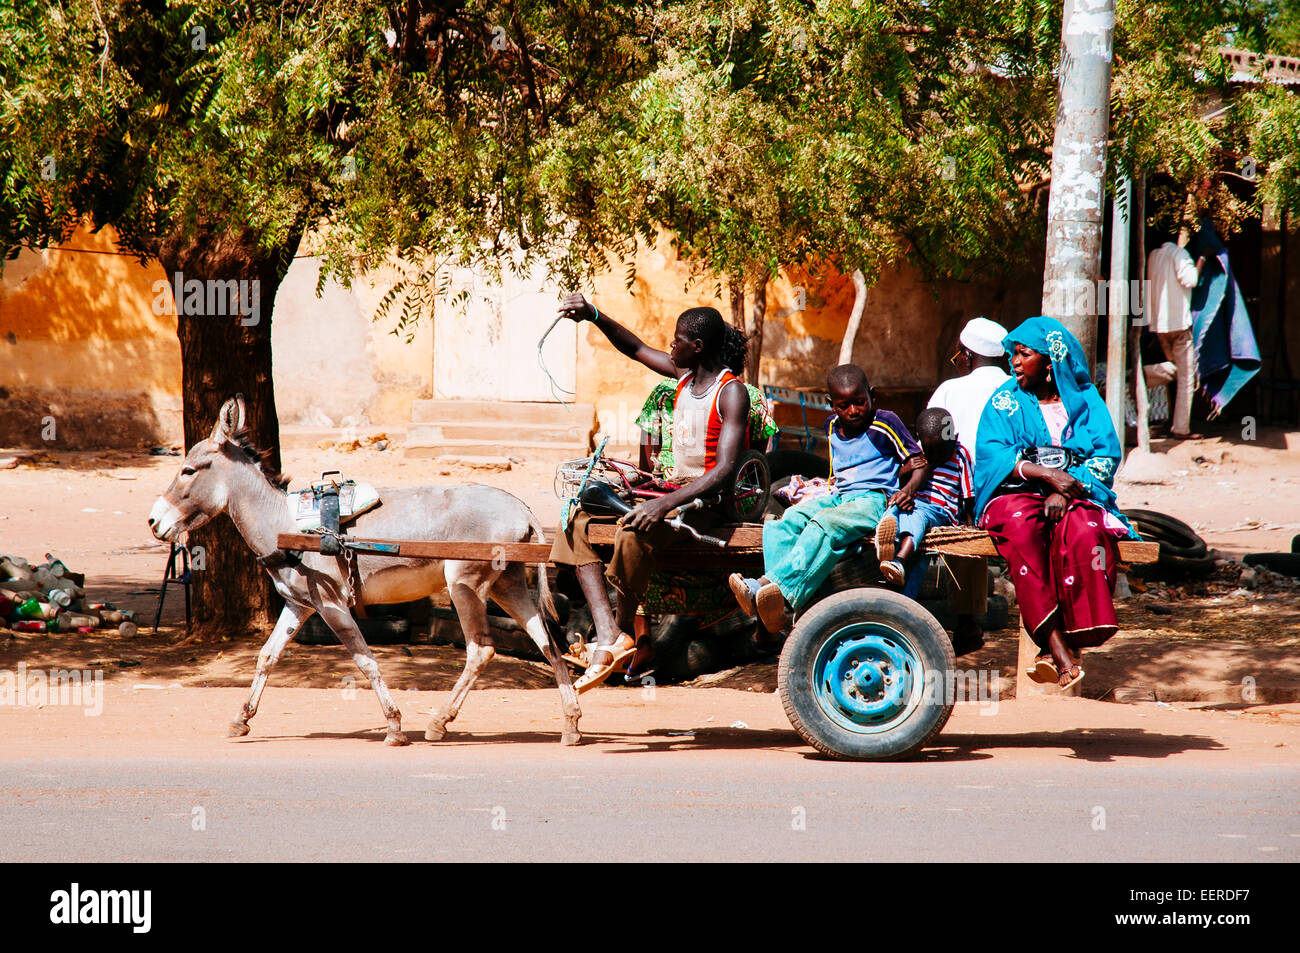 Les personnes en voyage d'donckey panier, Burkina Faso. Banque D'Images